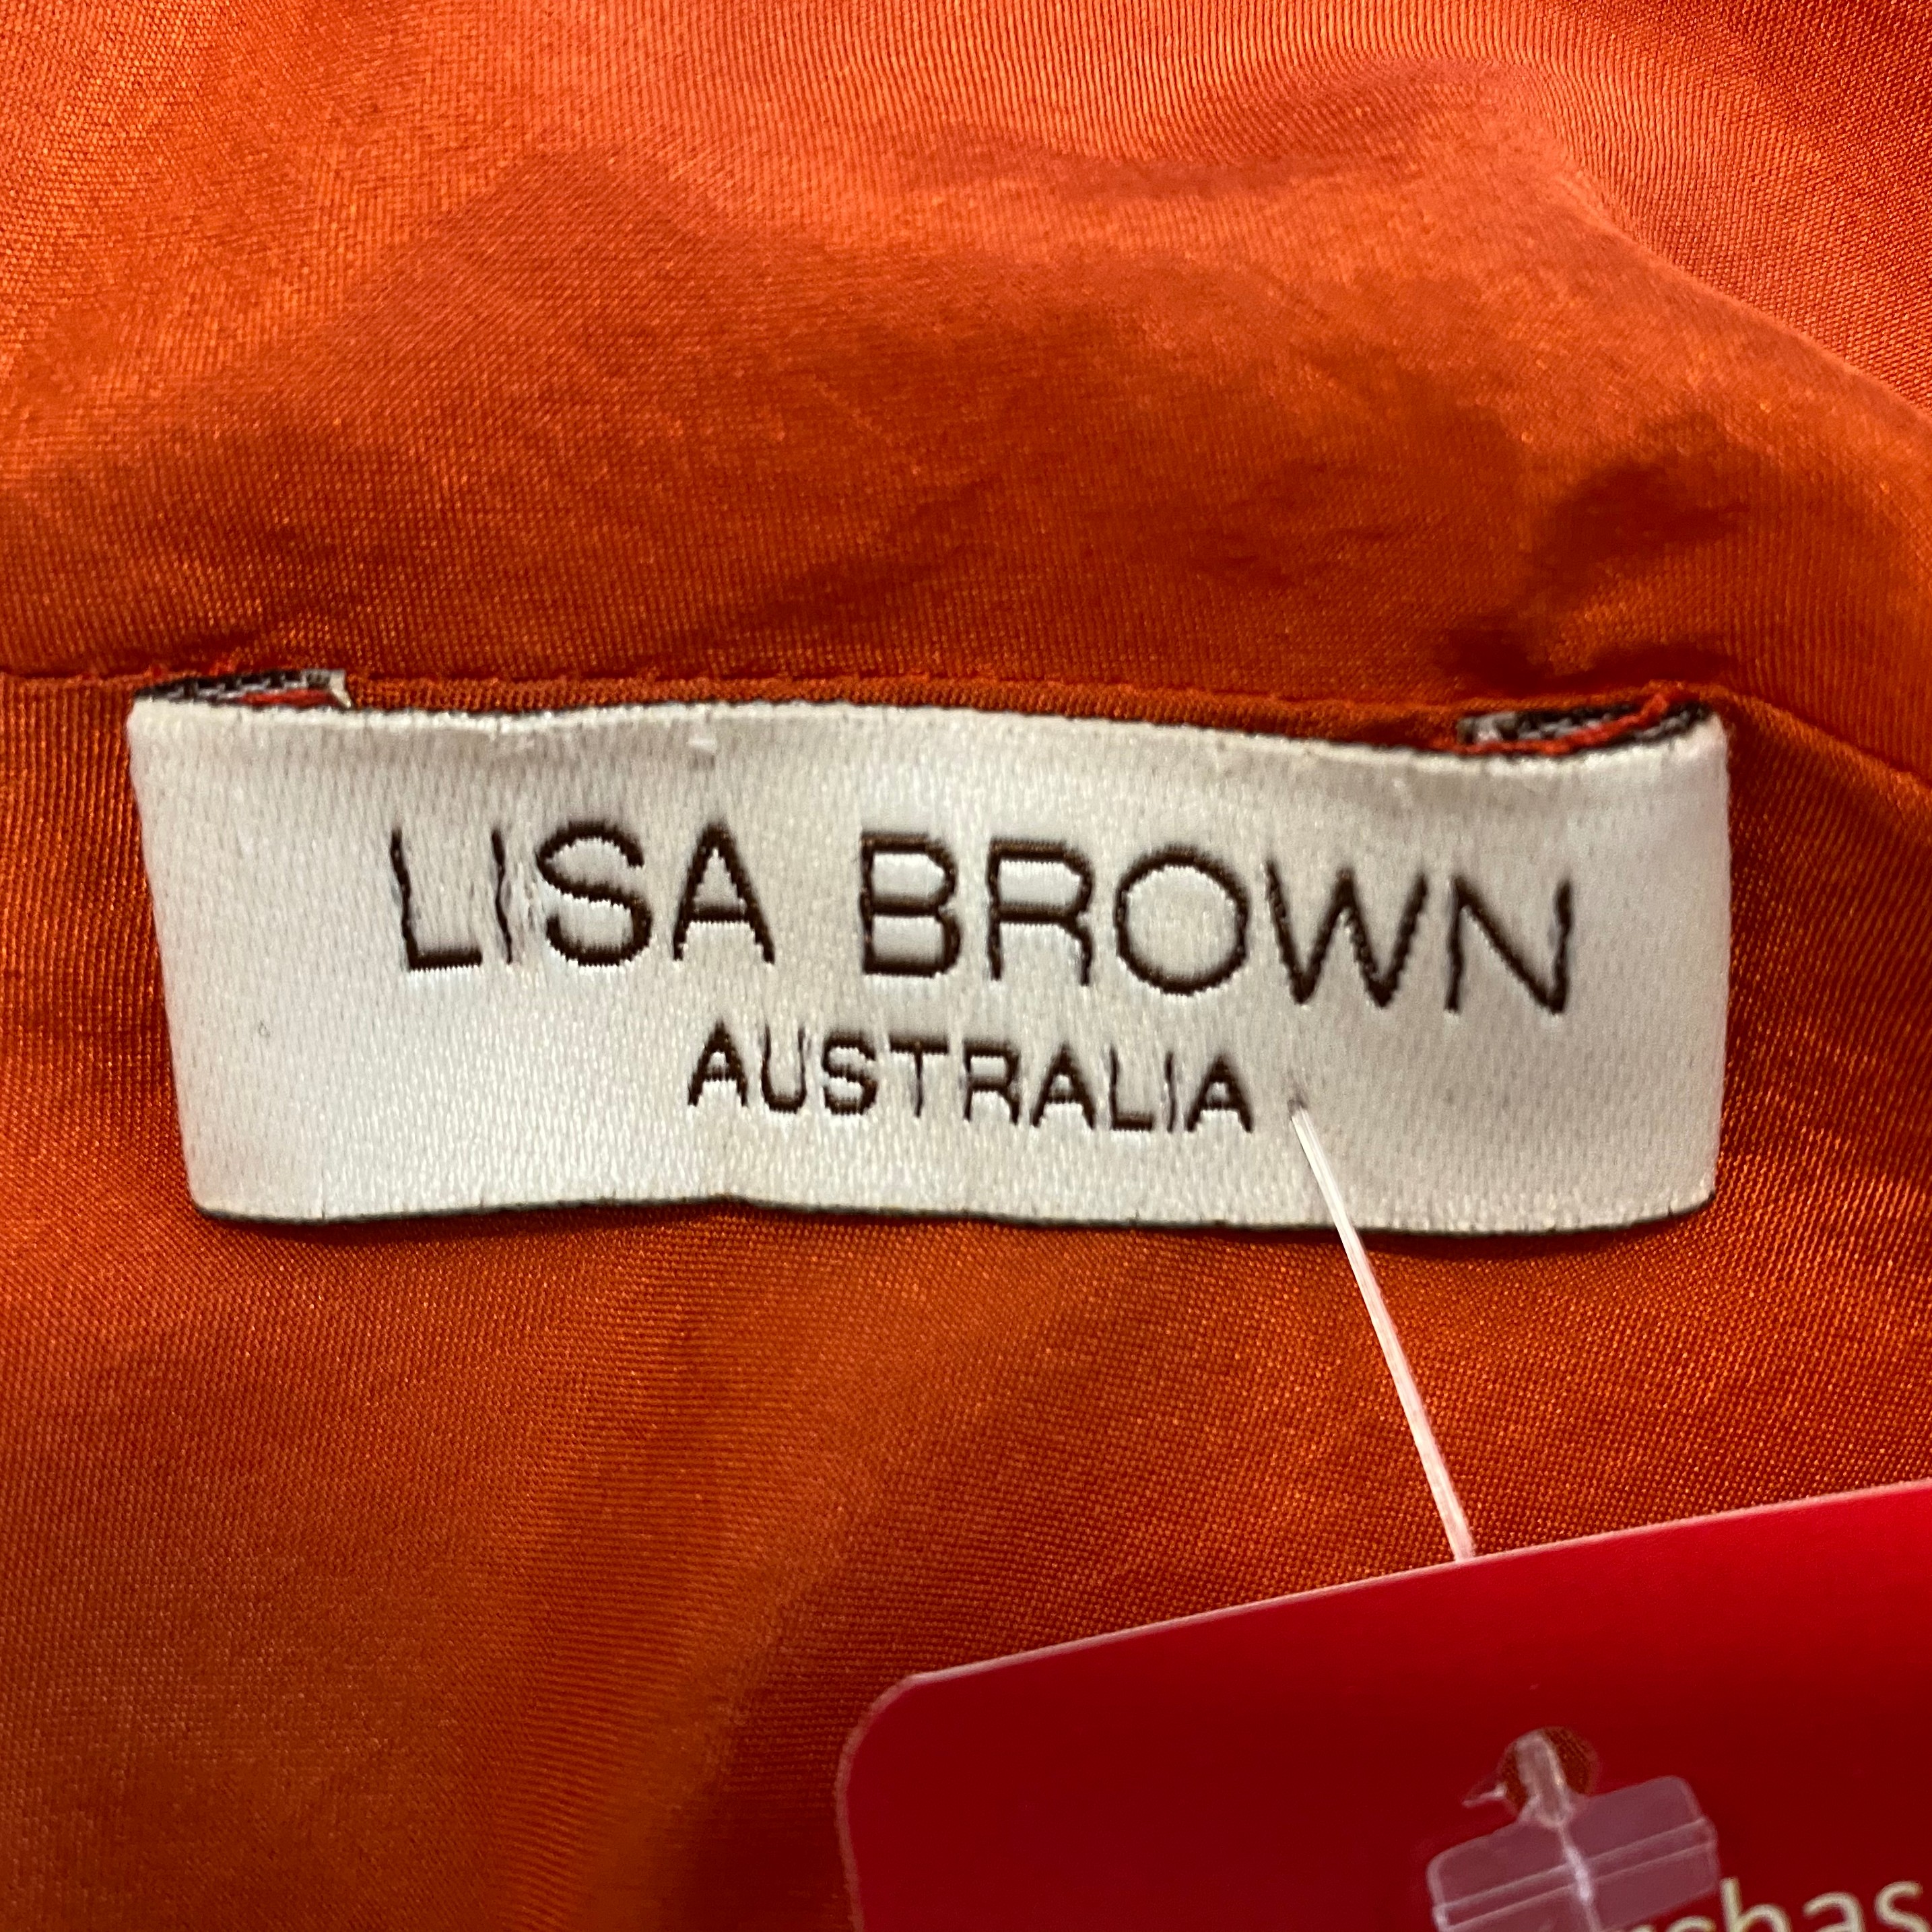 Lisa Brown silk top